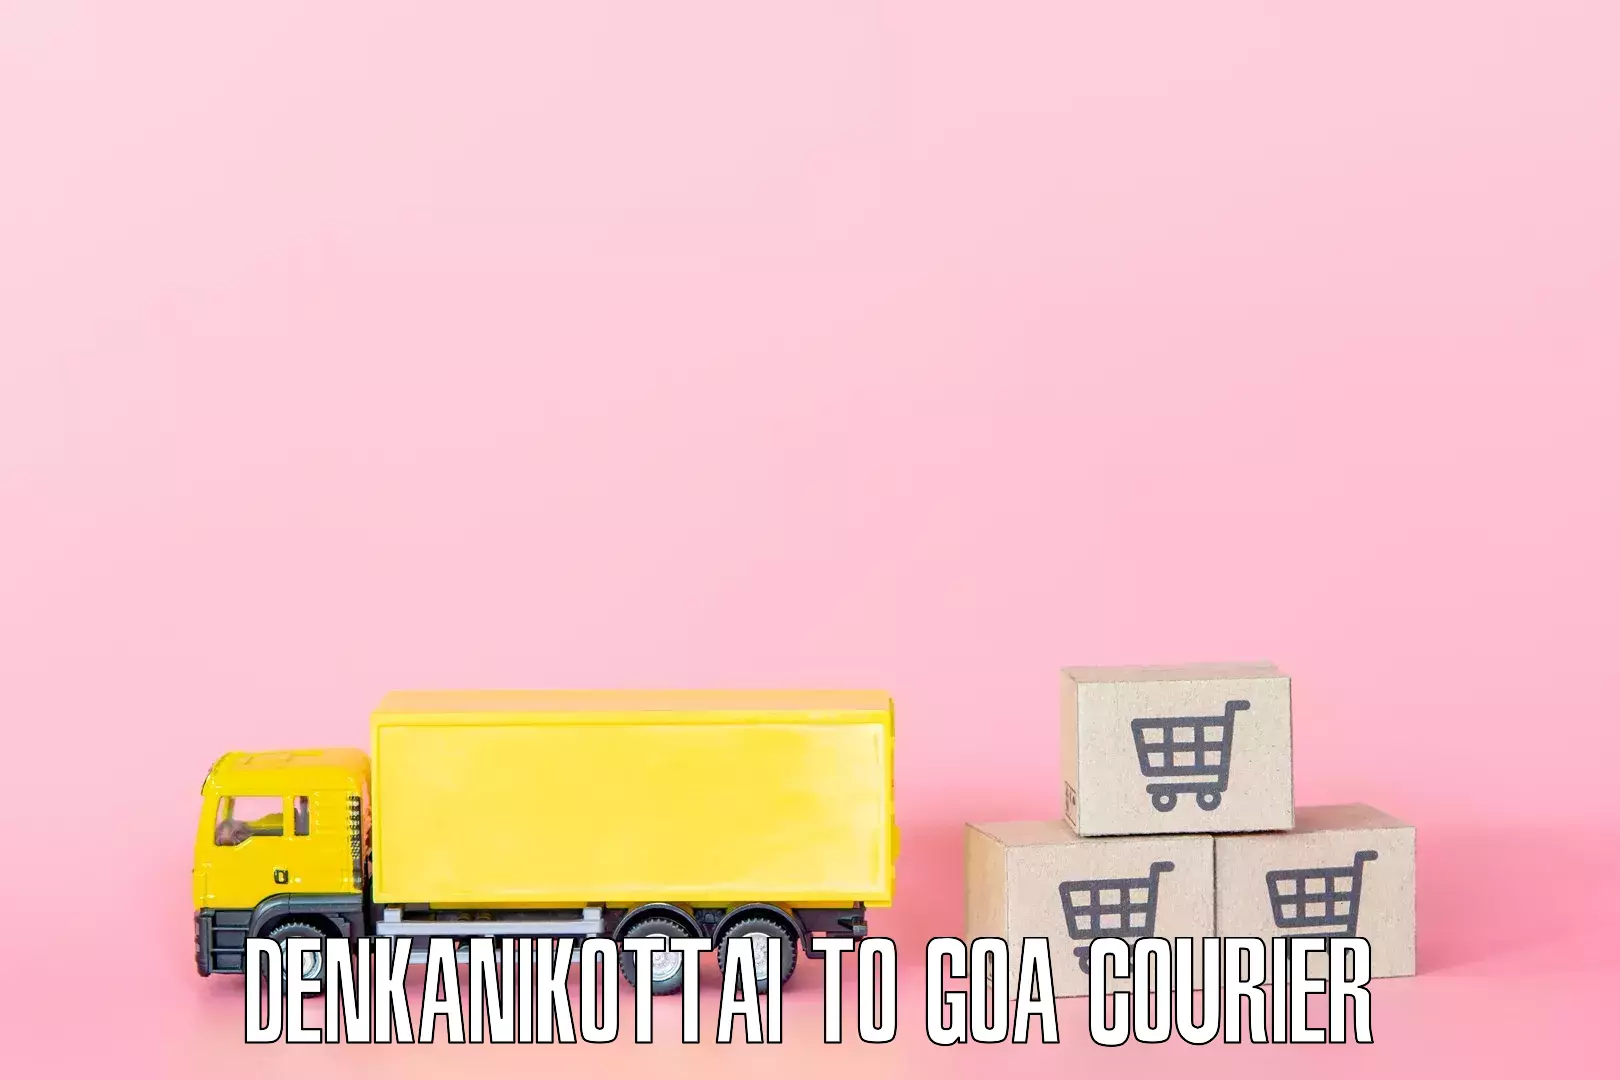 Personalized moving service Denkanikottai to IIT Goa